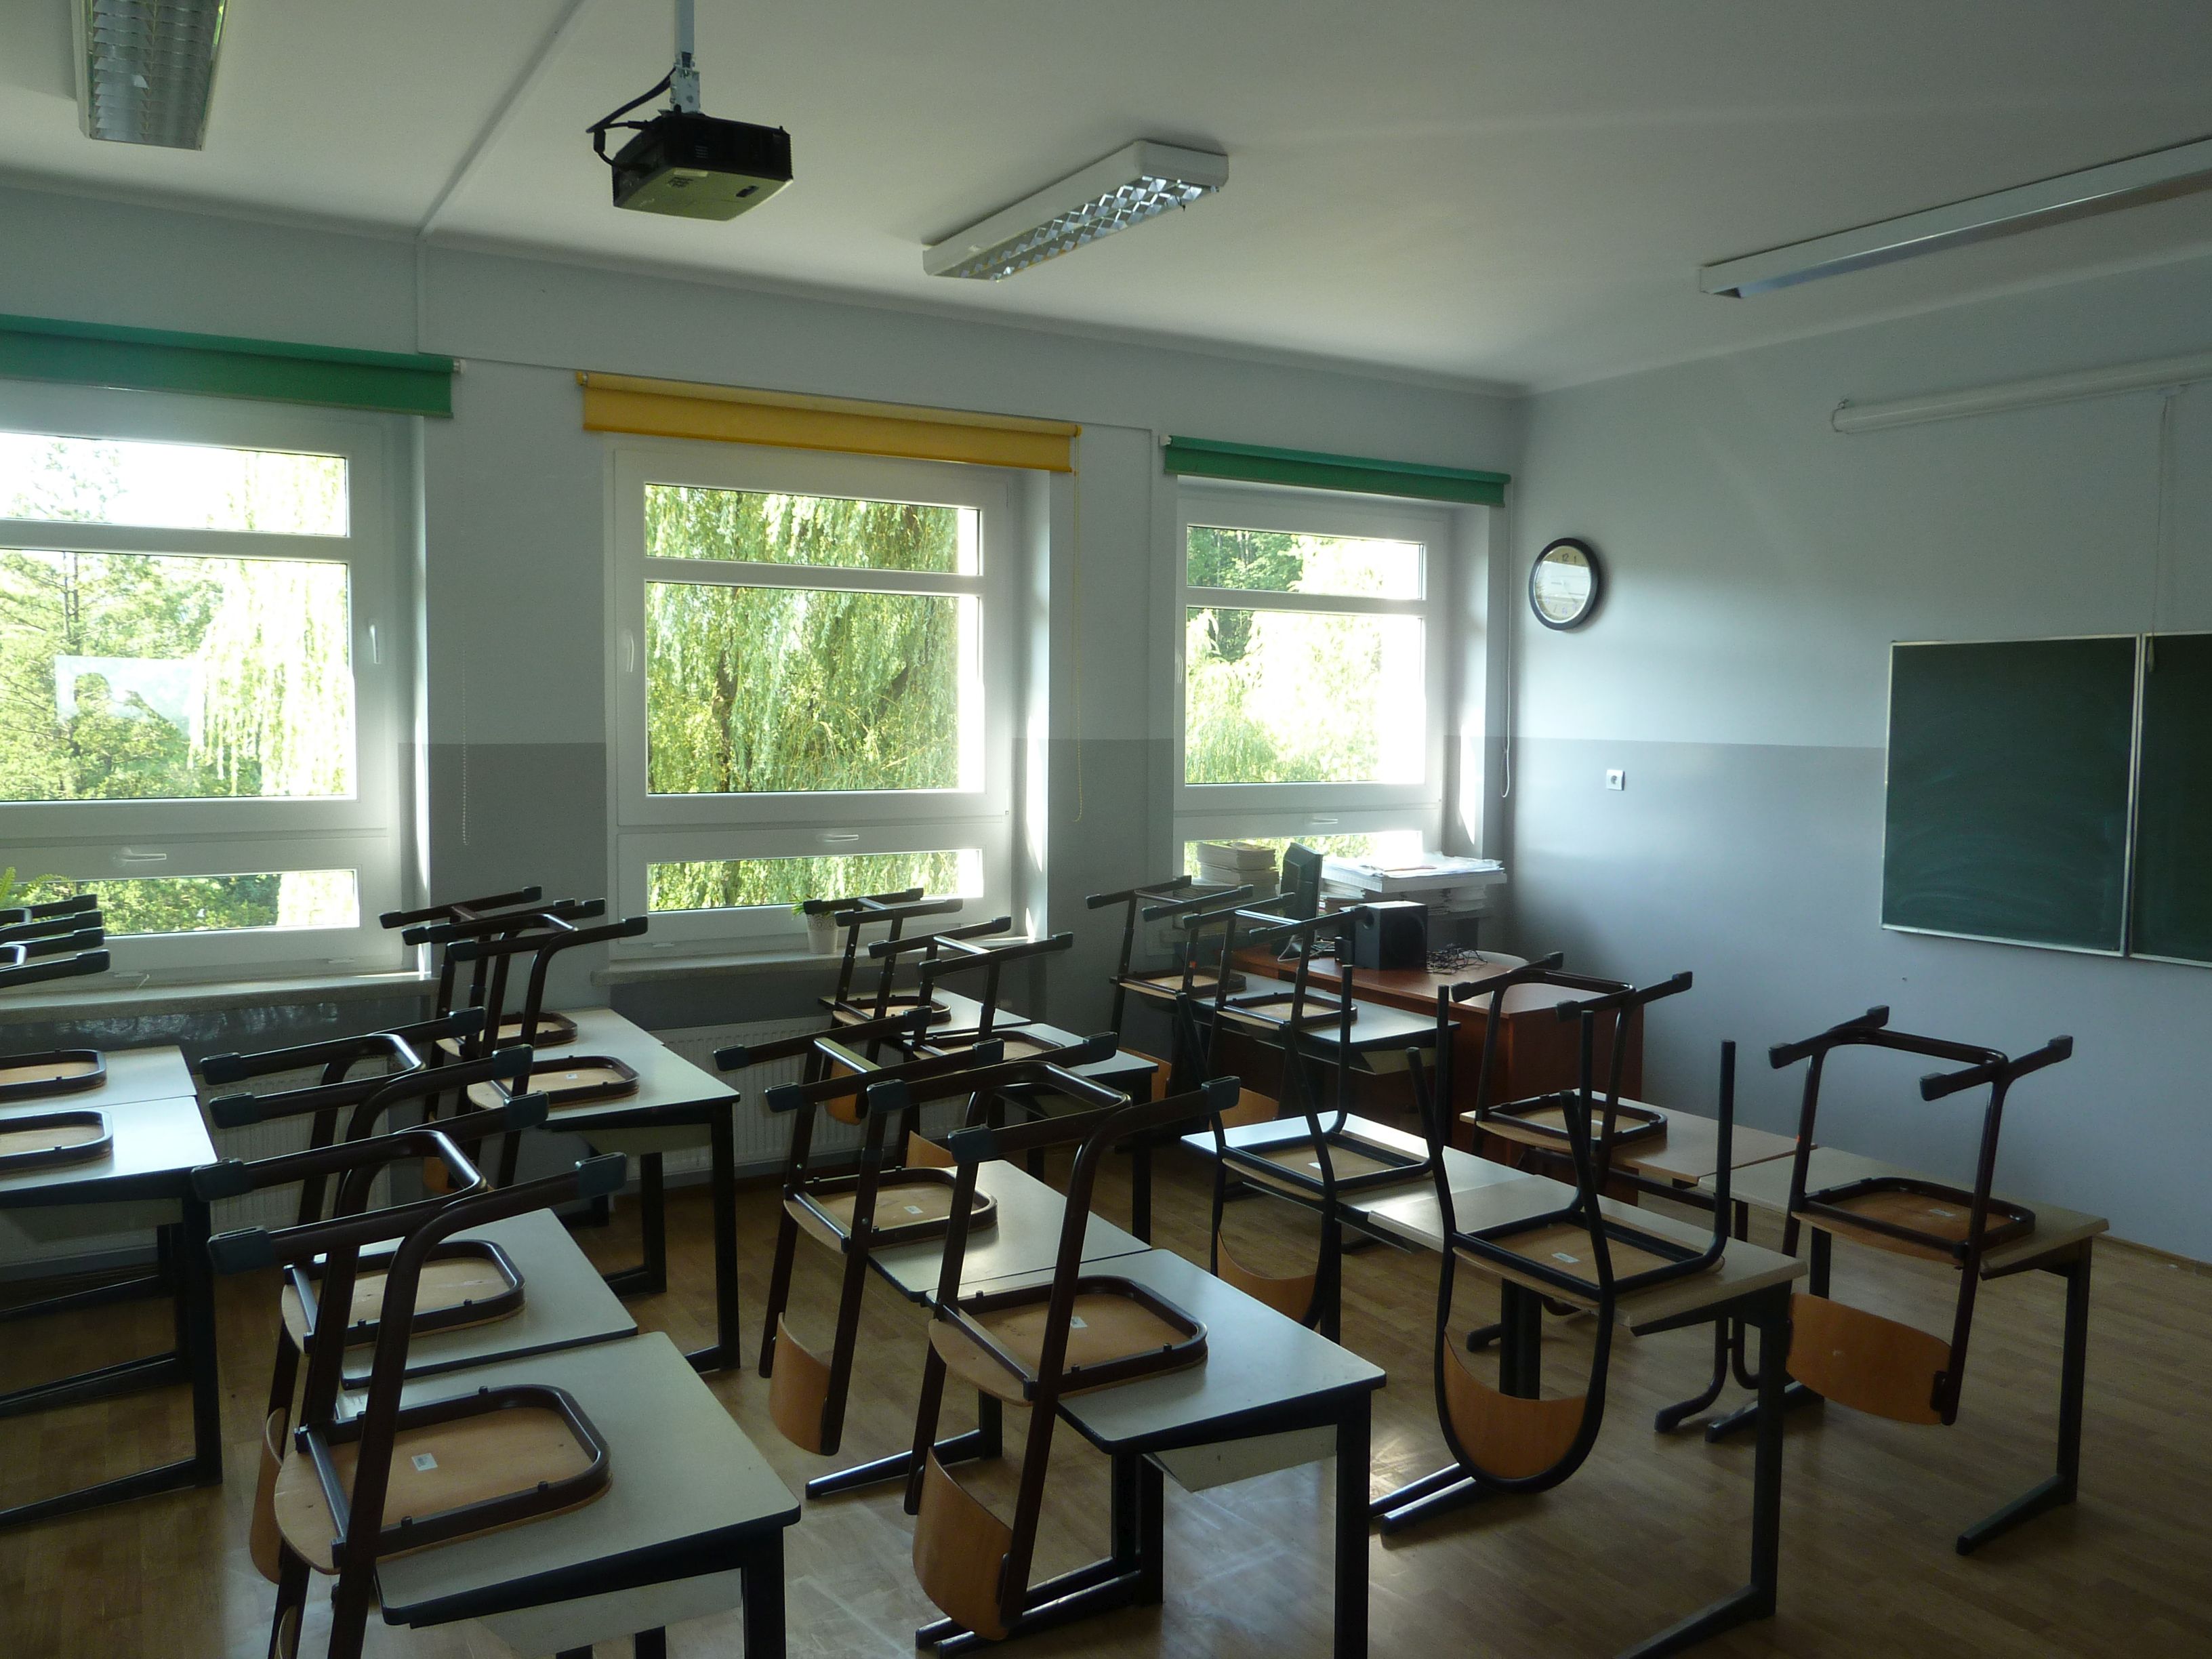 Sala szkolna, krzesła ustawione na ławkach, widok w stronę okien